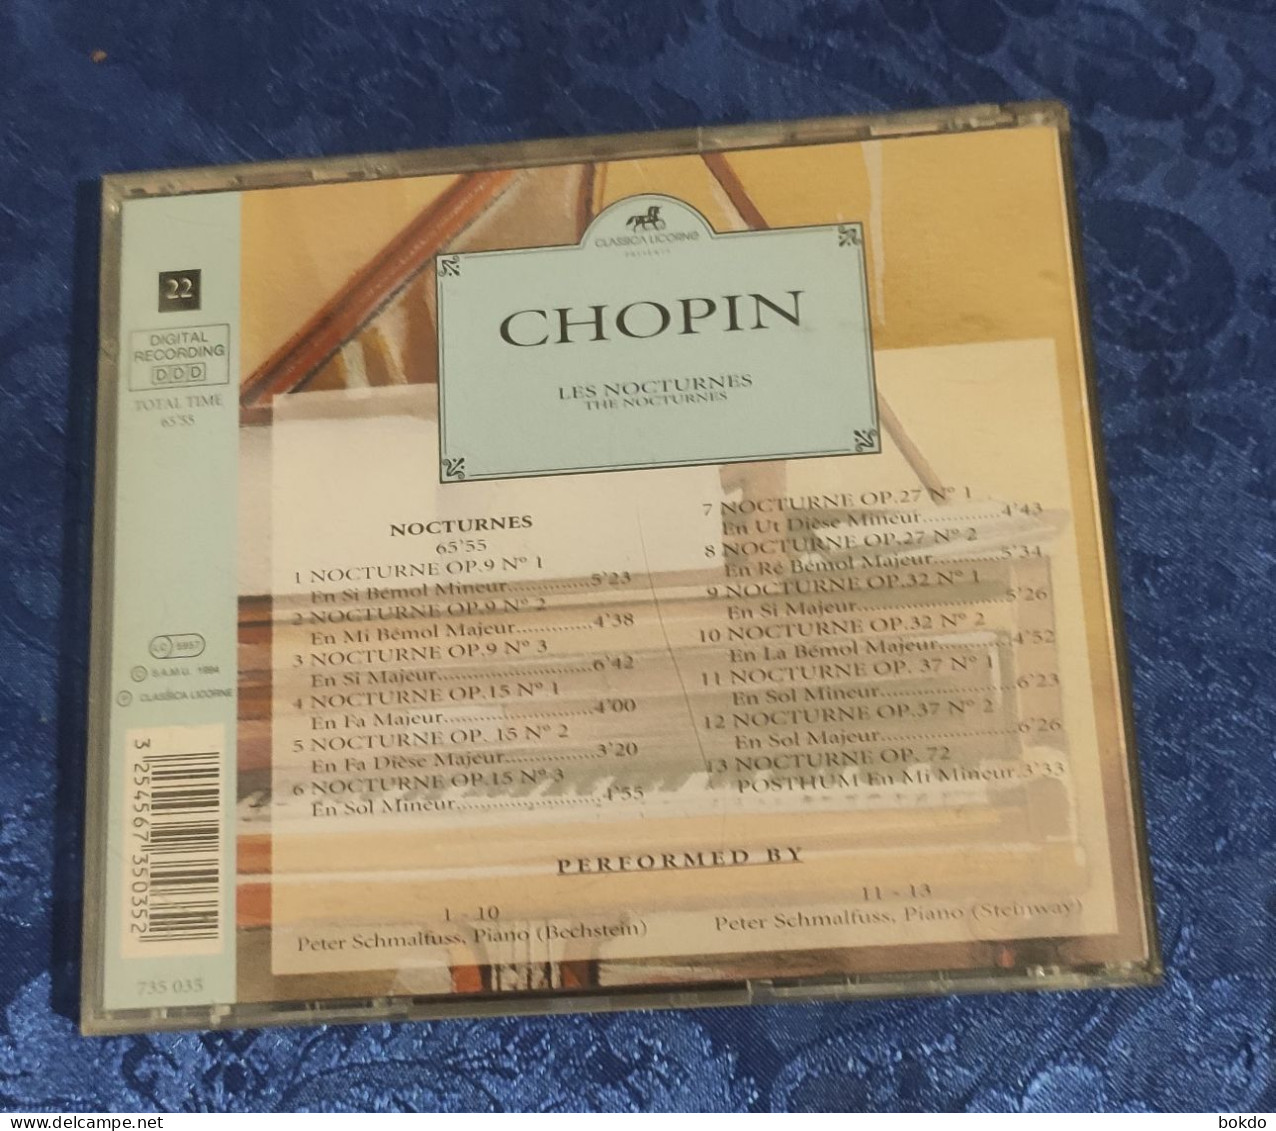 CHOPIN - Les Nocturnes - Classica